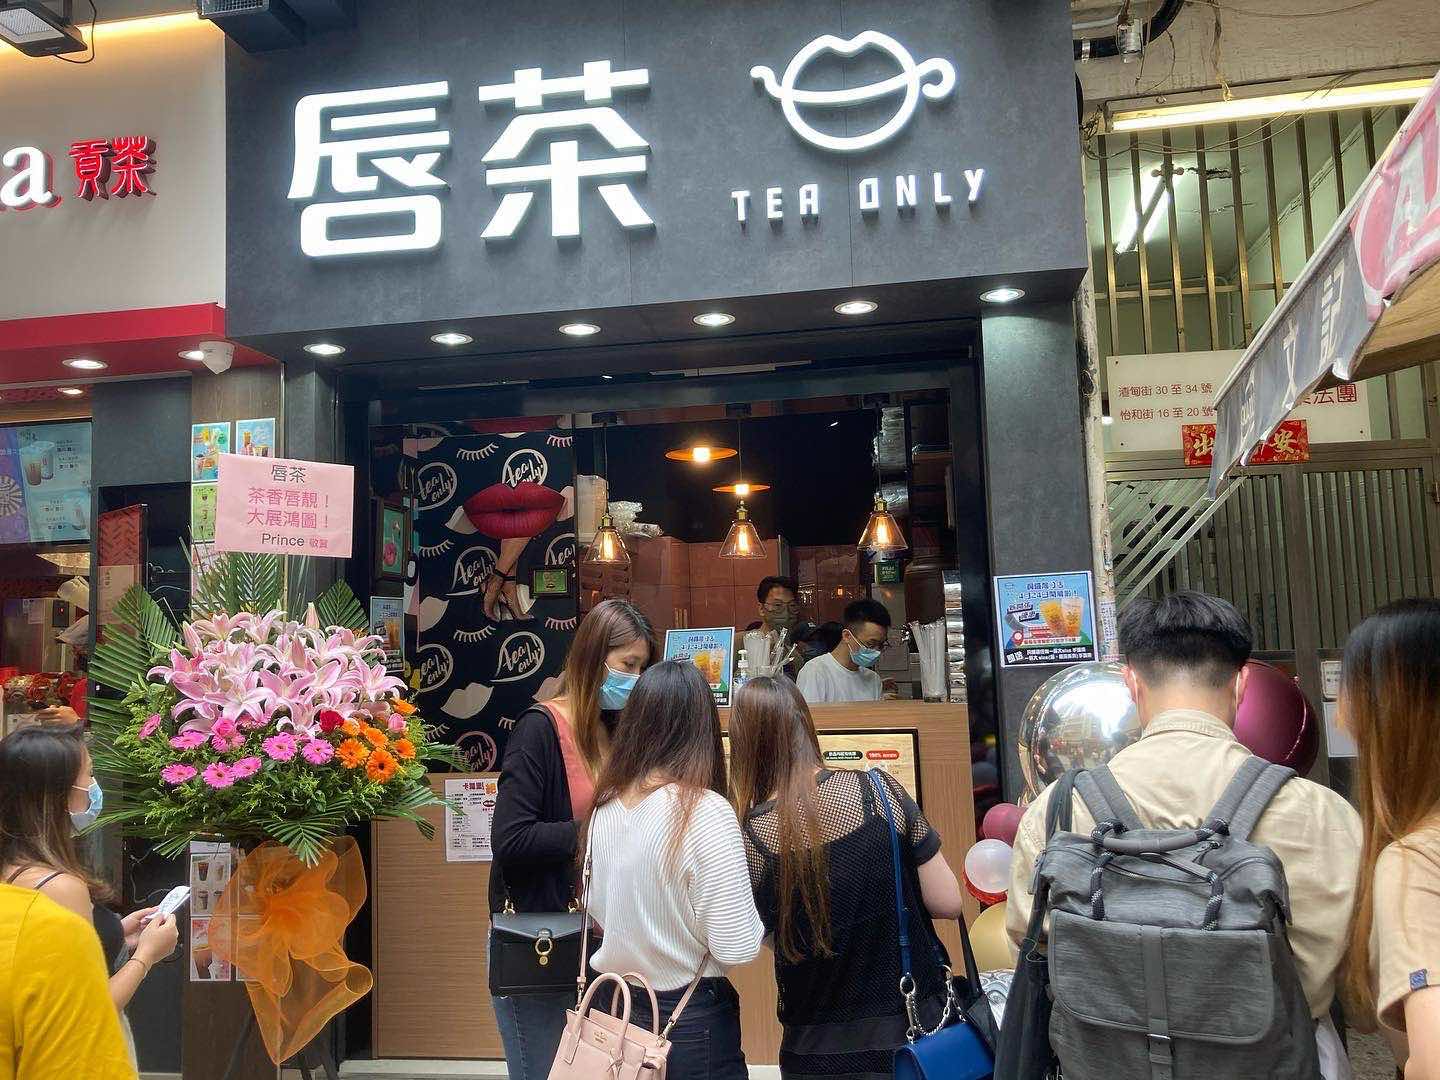 唇茶的特許經營香港區加盟店項目8